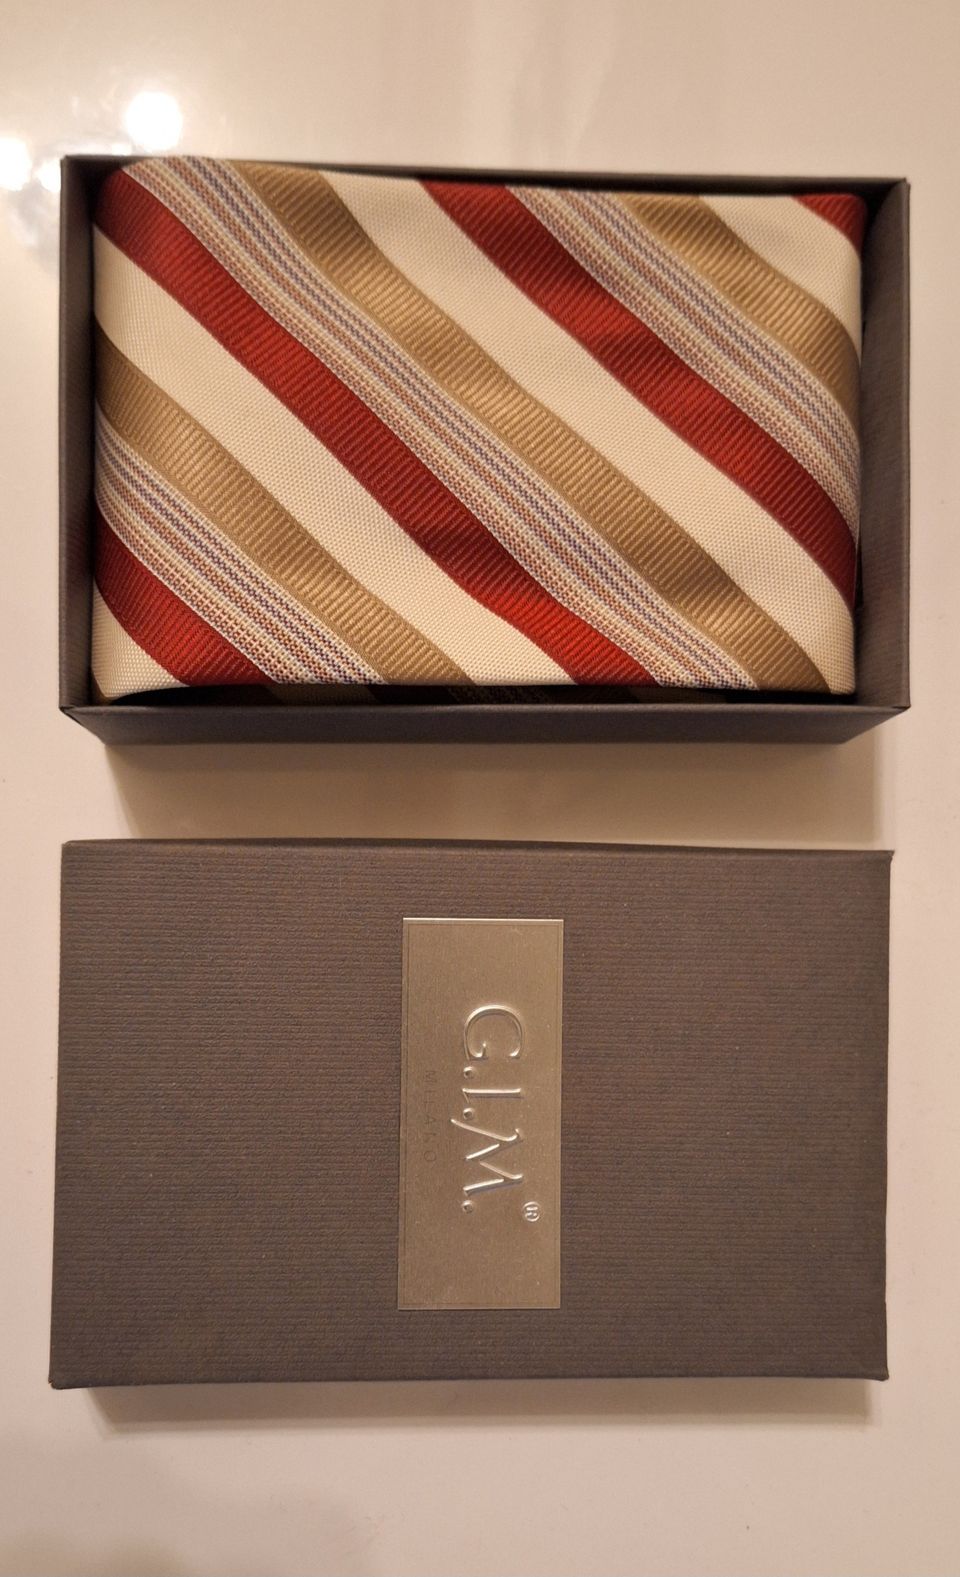 G.I.M. italialainen solmio - UUSI